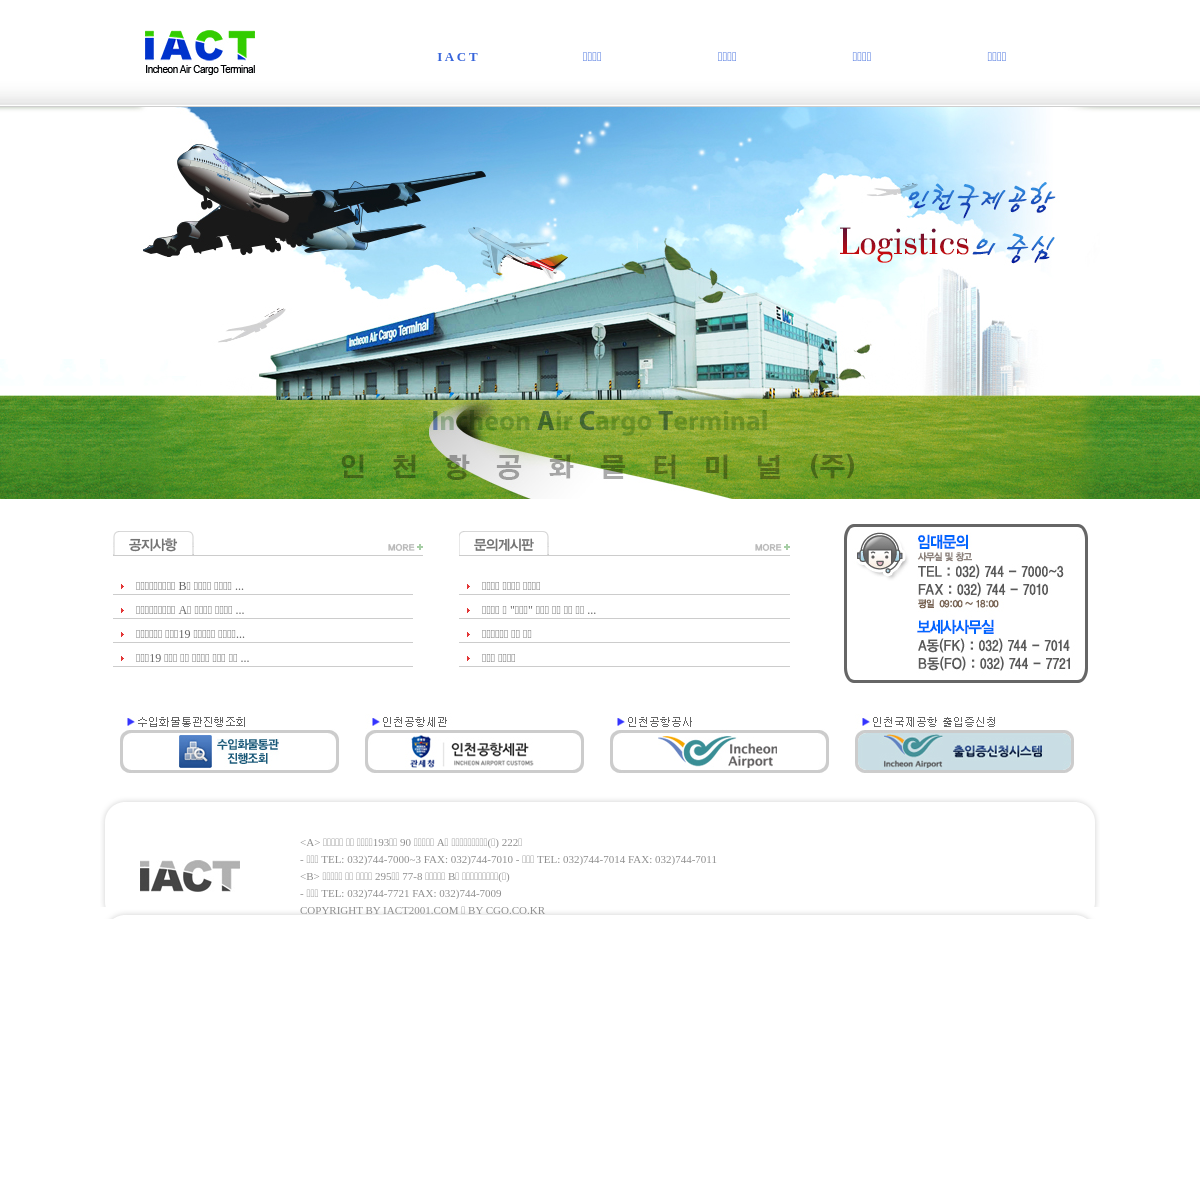 A complete backup of iact2001.com